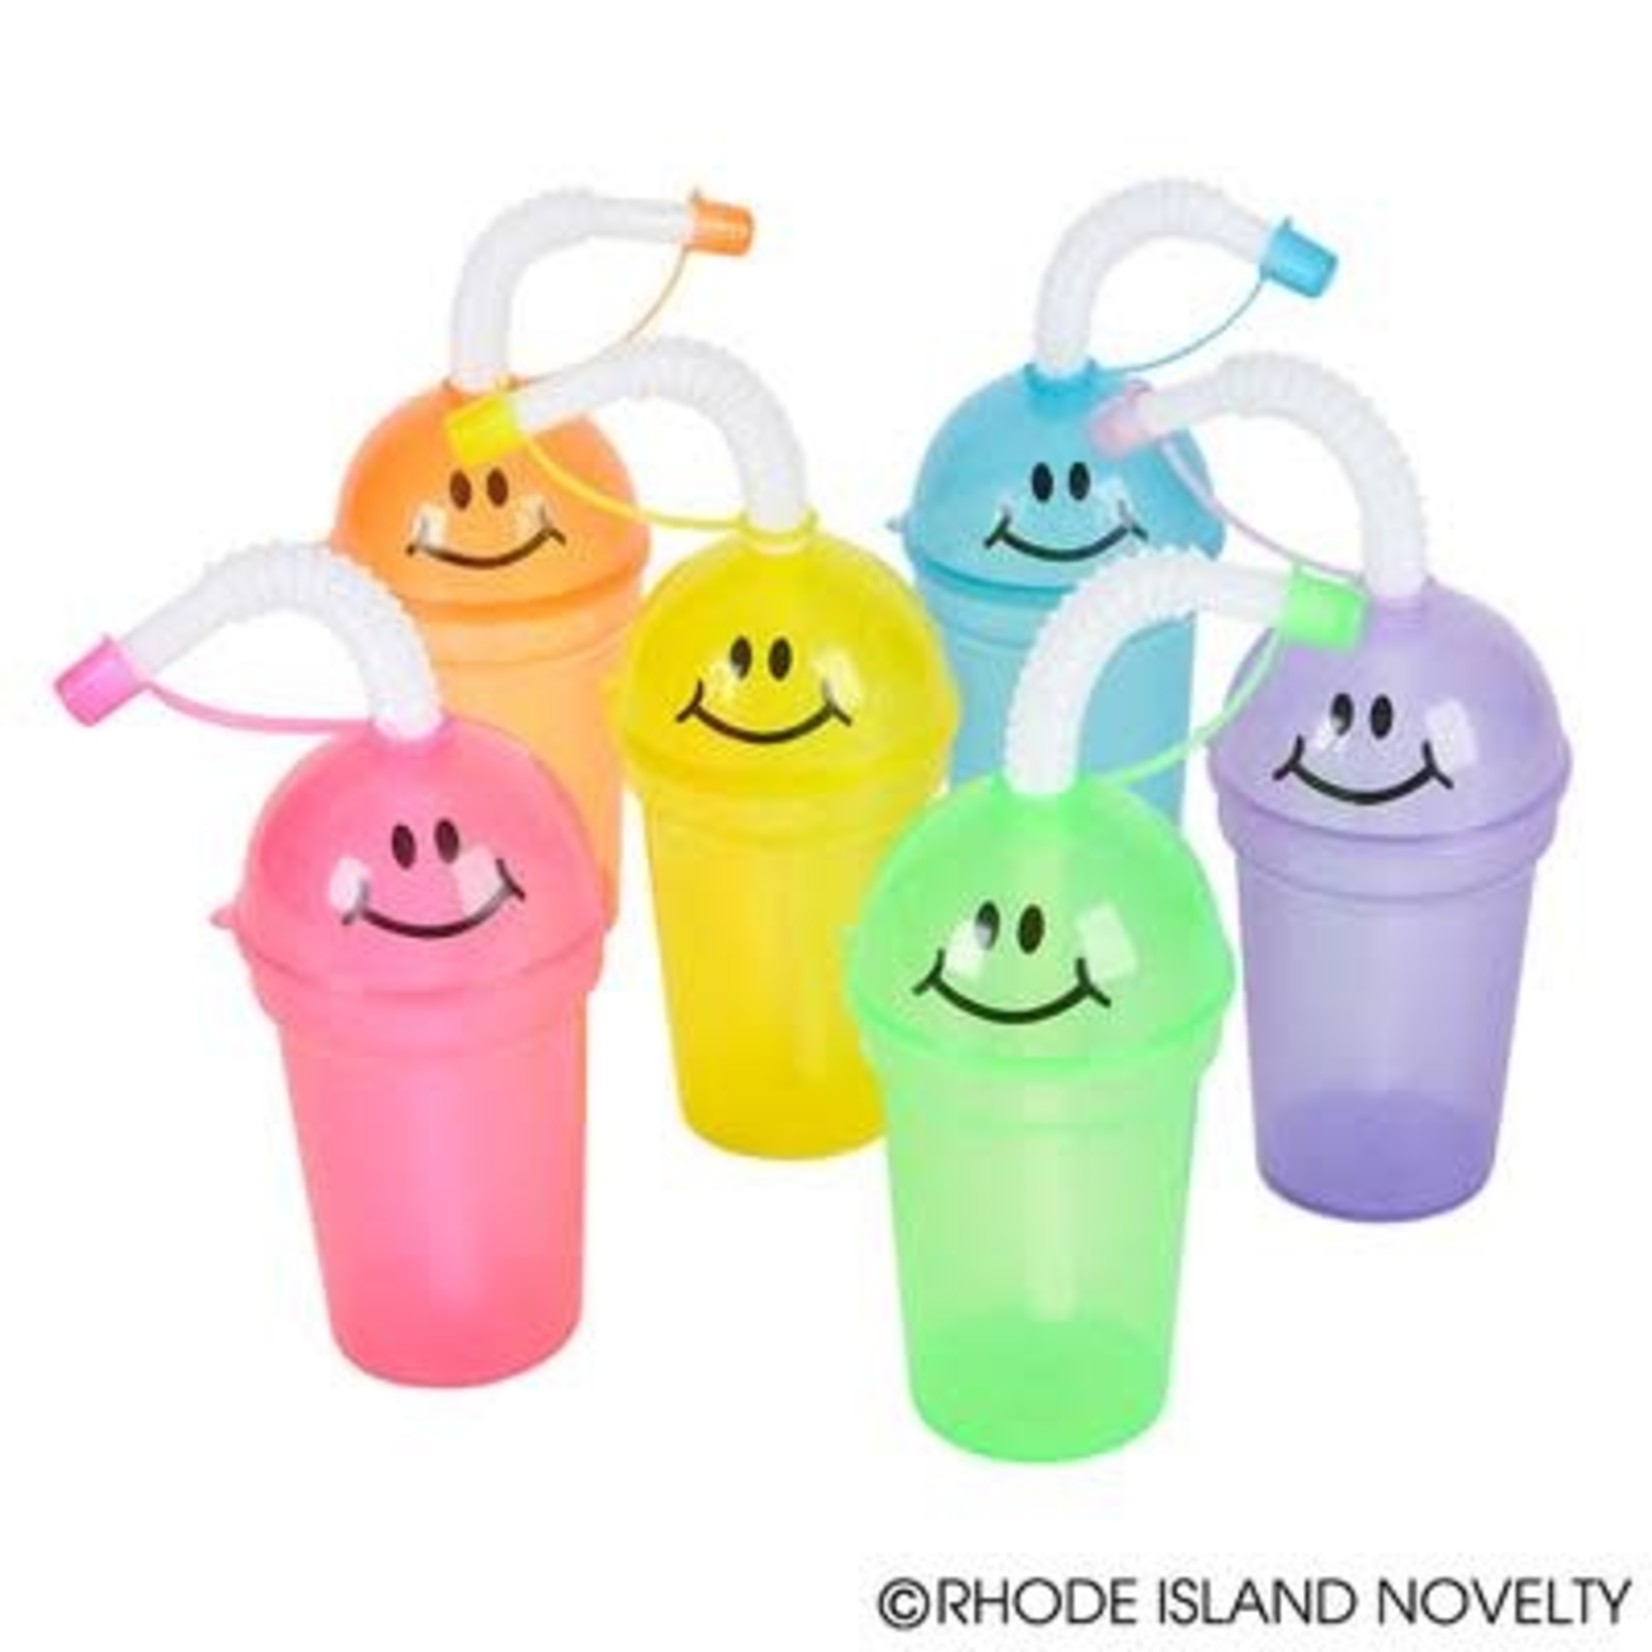 https://cdn.shoplightspeed.com/shops/638201/files/32528835/1652x1652x2/rhode-island-novelty-7oz-smiley-face-sipper-cup.jpg